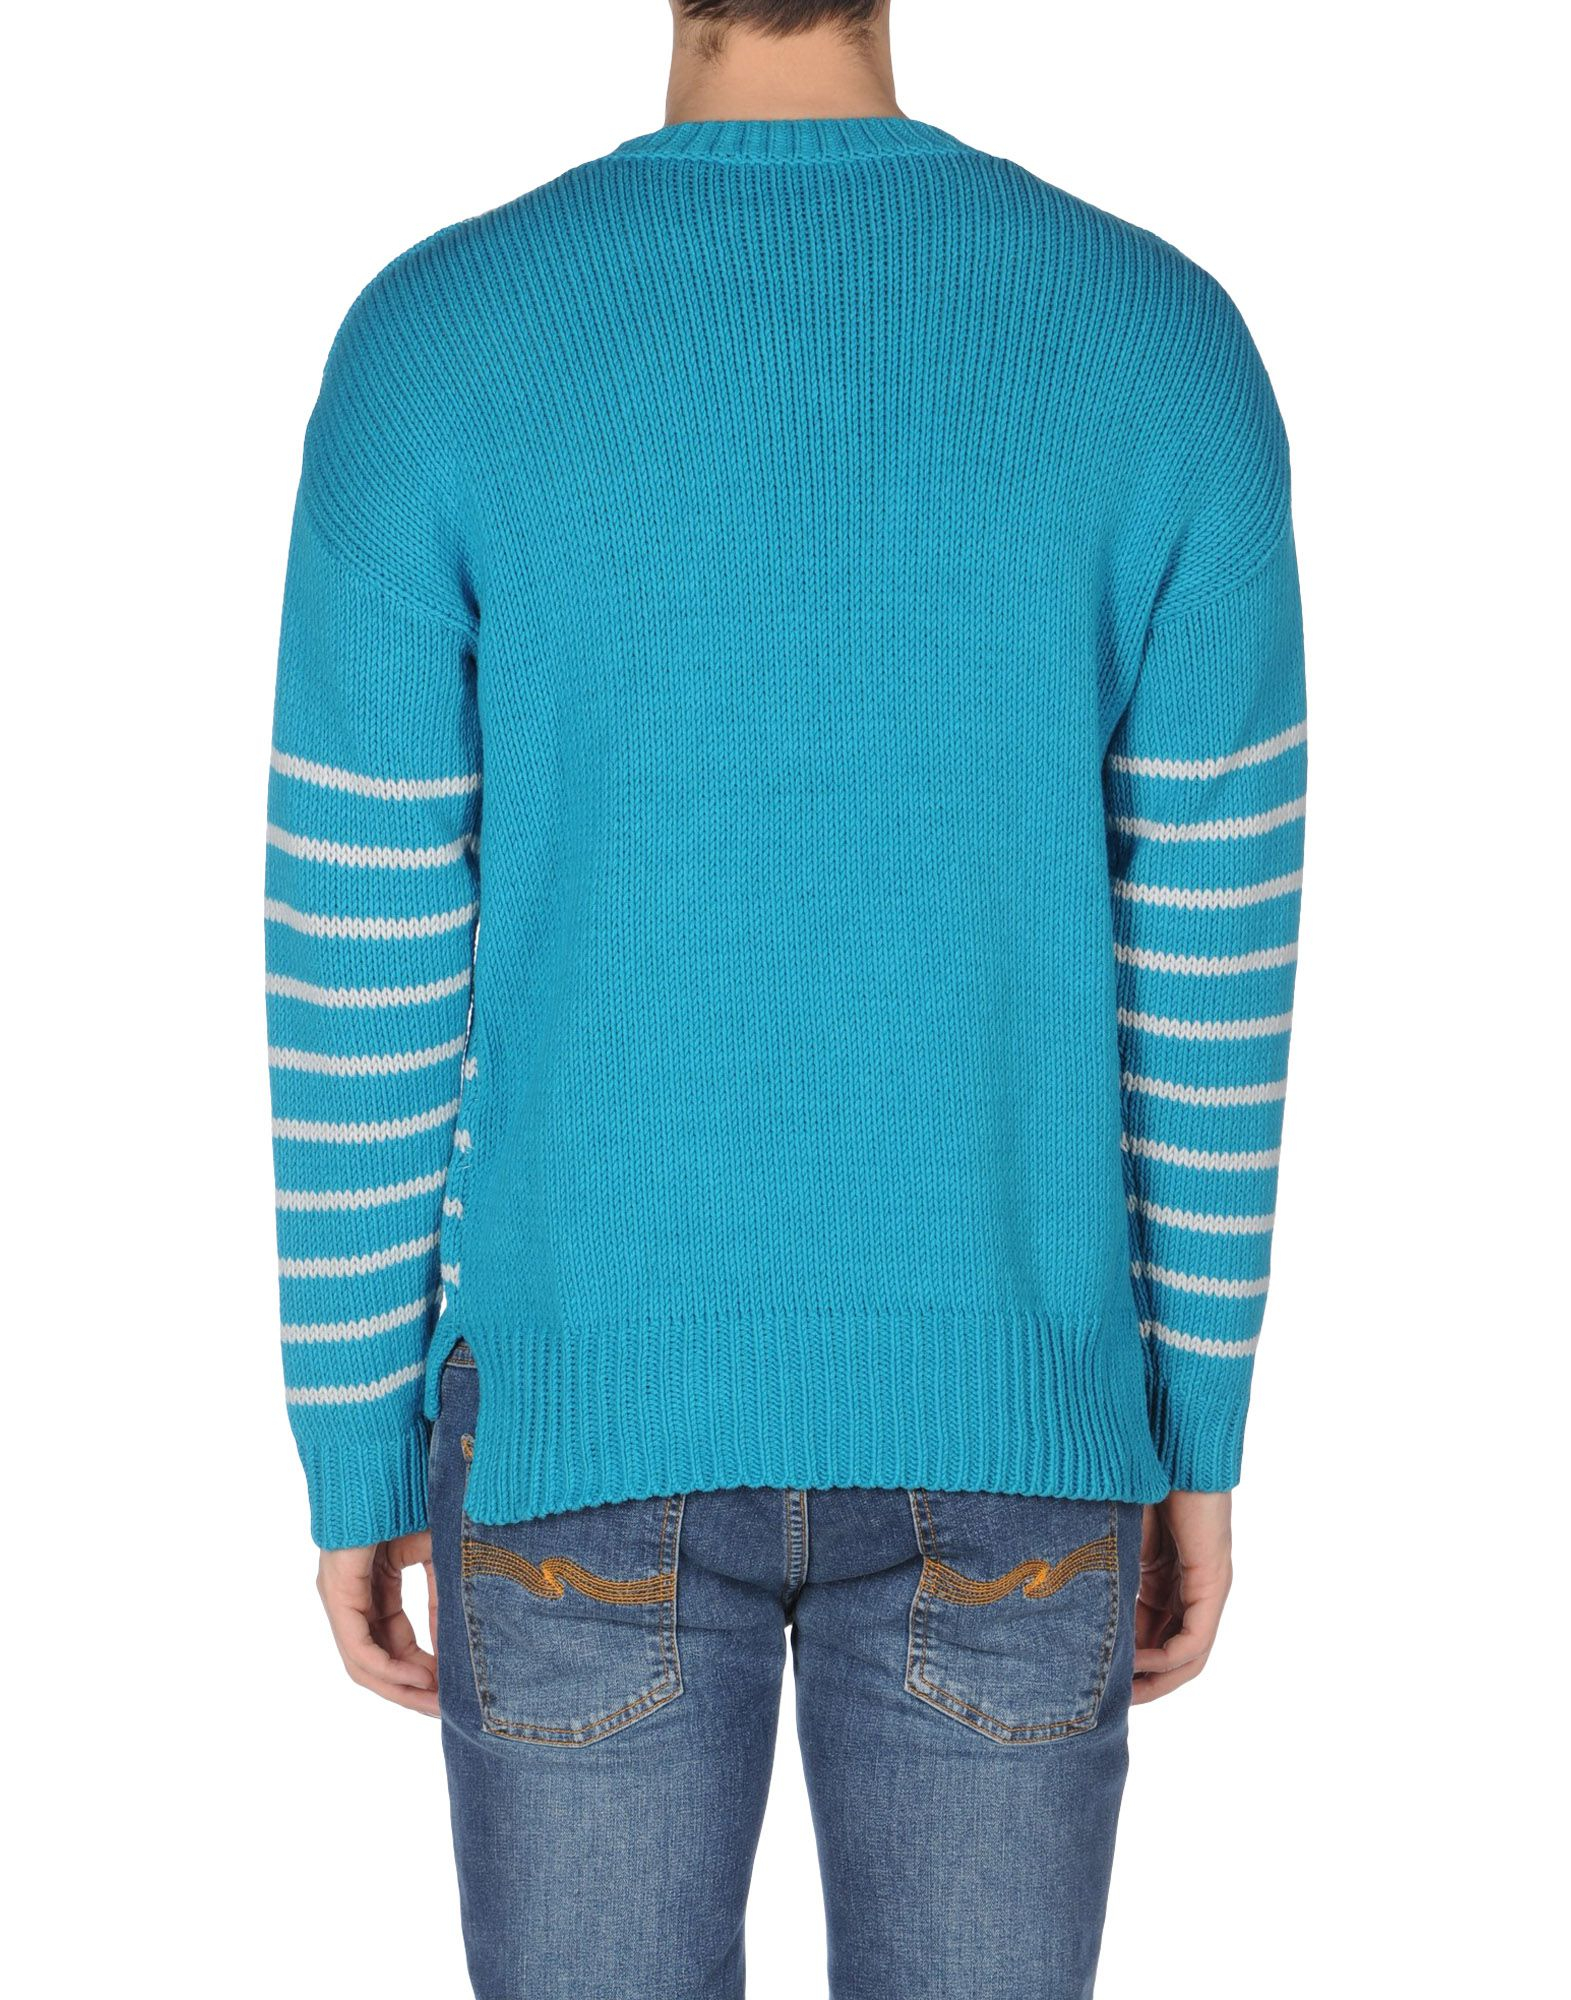 Emporio Armani Cotton Sweater in Blue for Men - Lyst